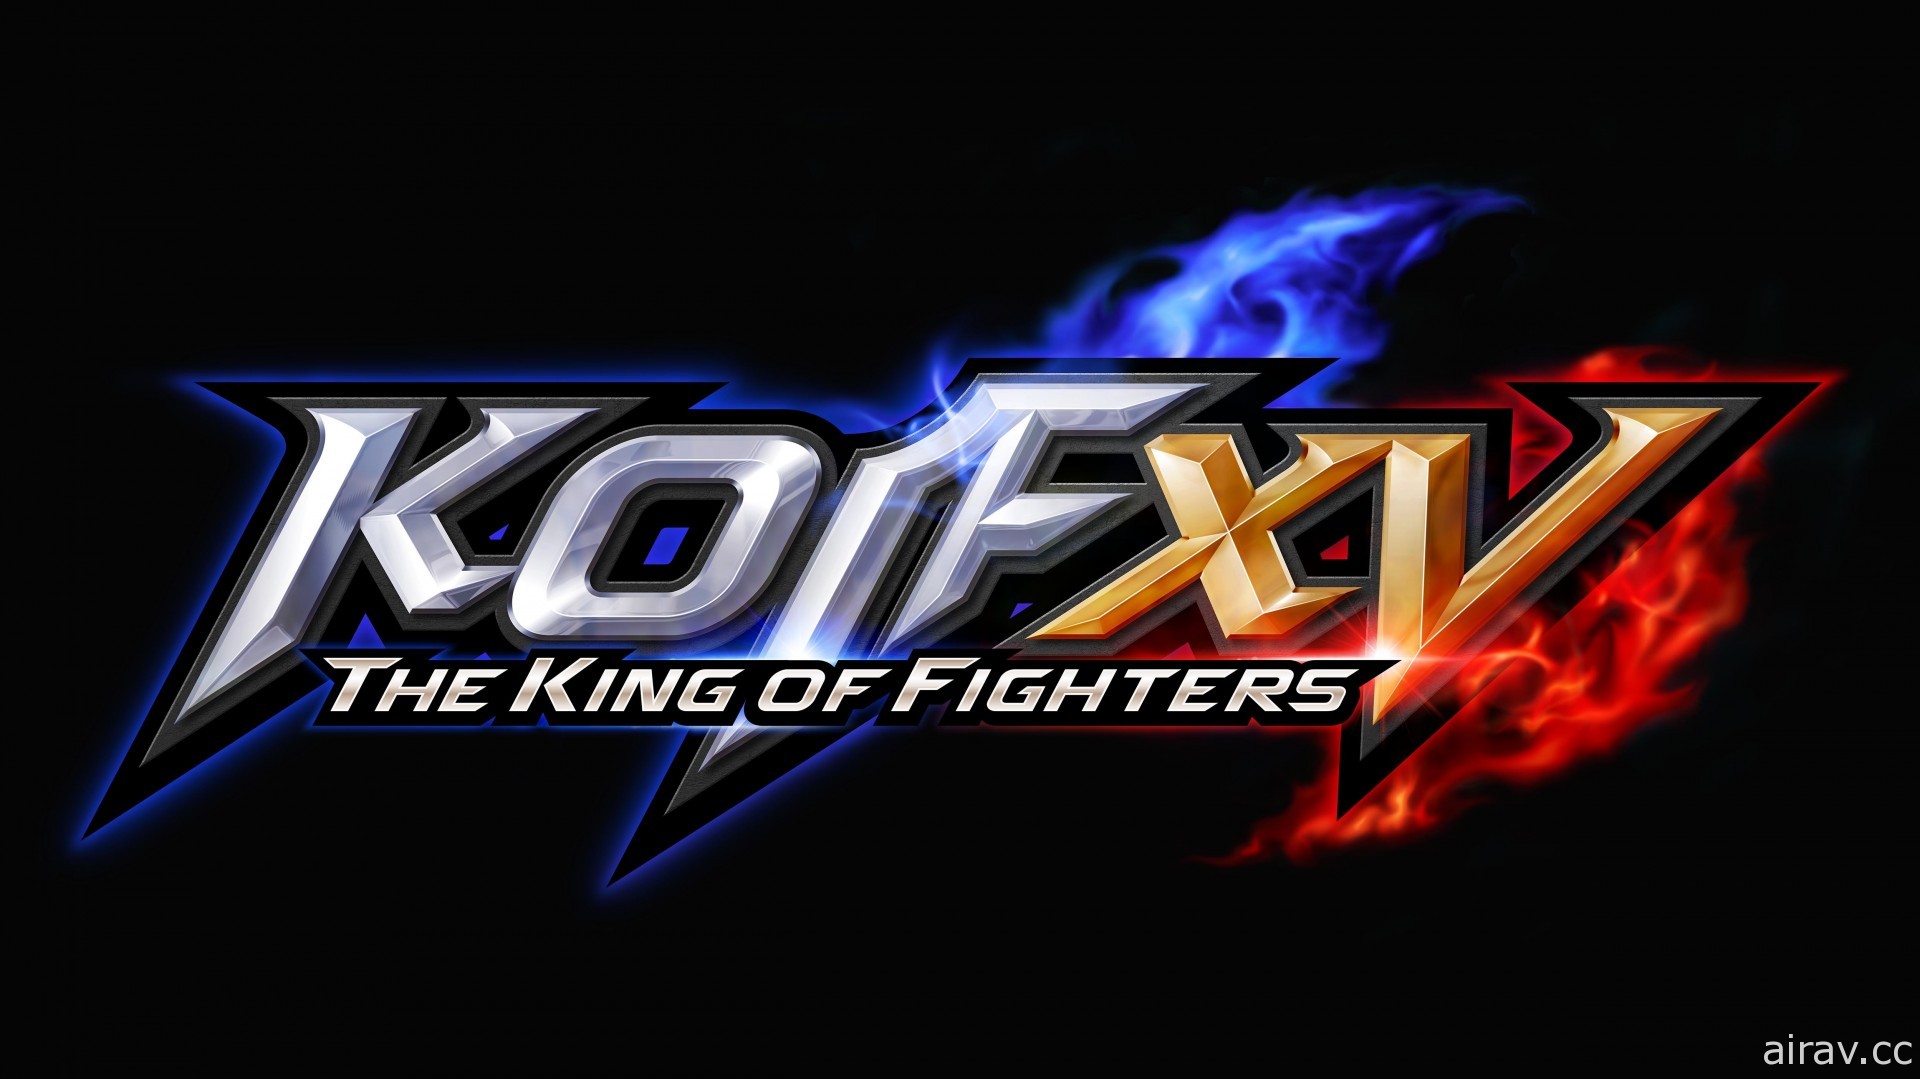 《拳皇 XV》預告明年 1 月公開新情報！將同步揭曉《侍魂 曉》季票 3 參戰角色